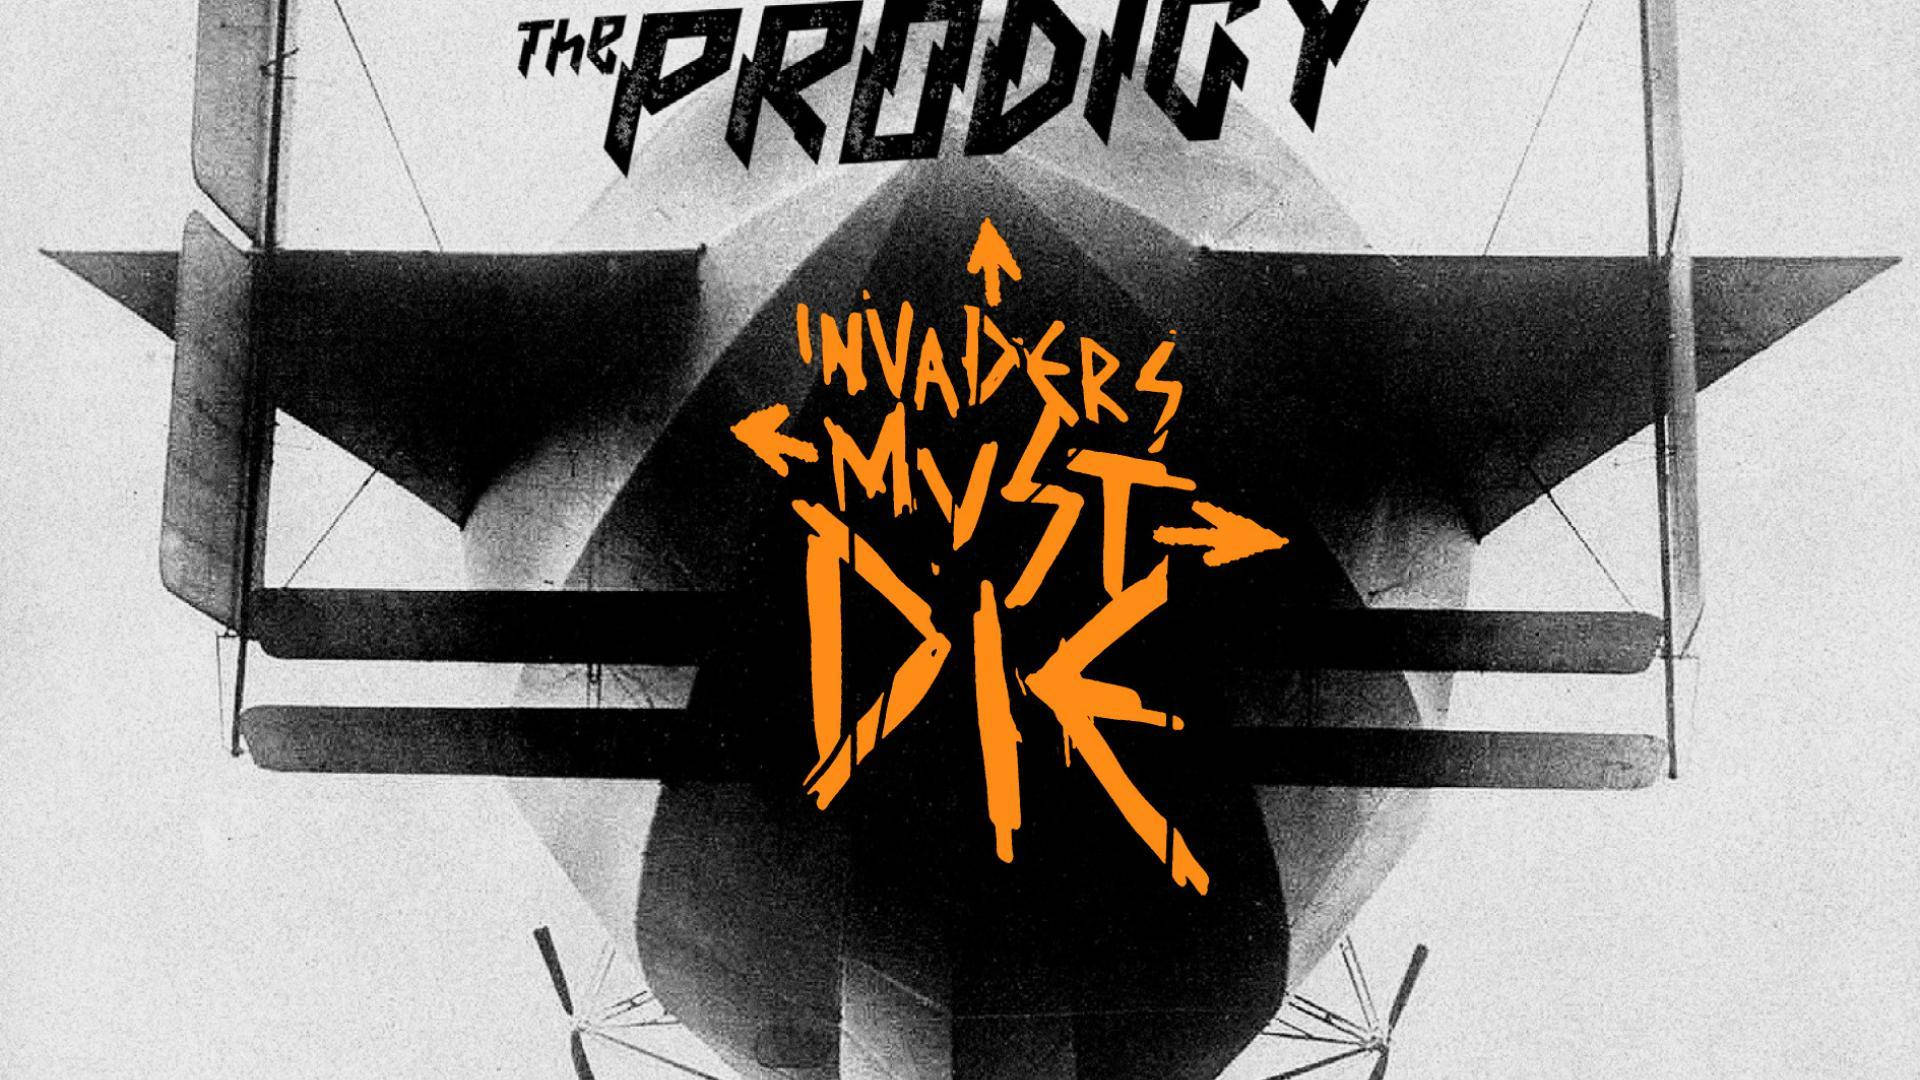 Dasprodigy Invaders Must Die Album Wallpaper